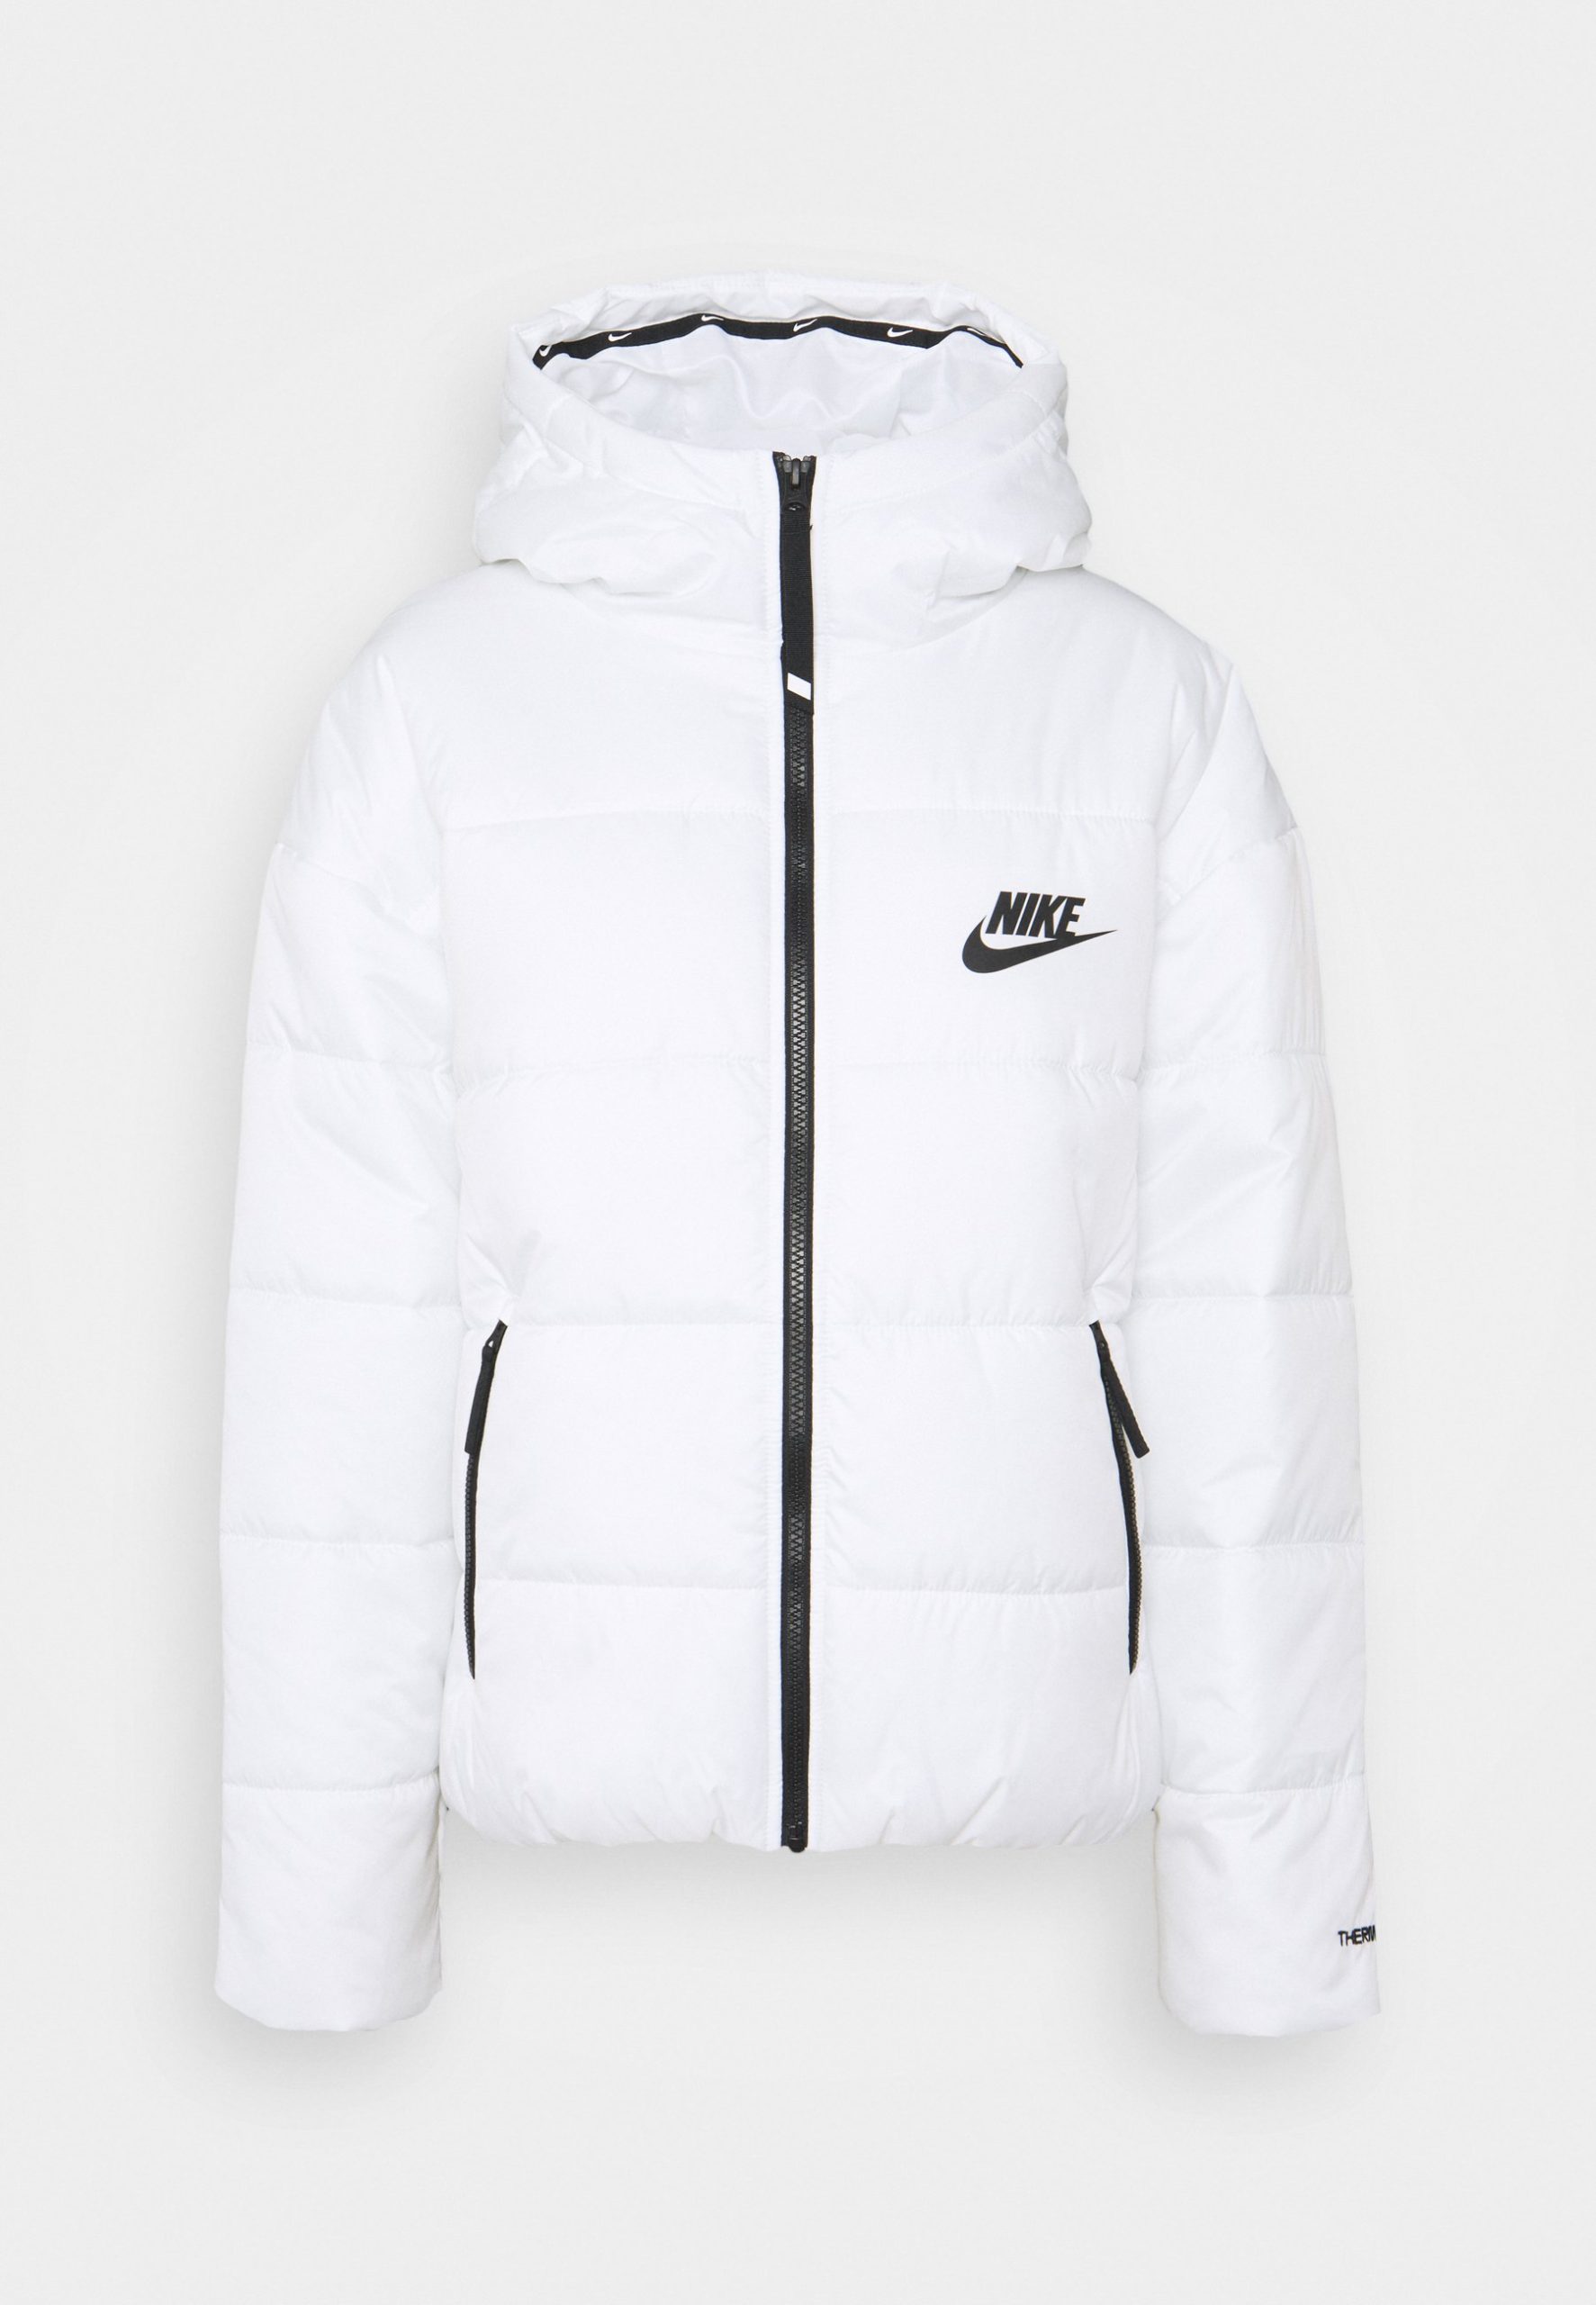 Nike vinterjackor